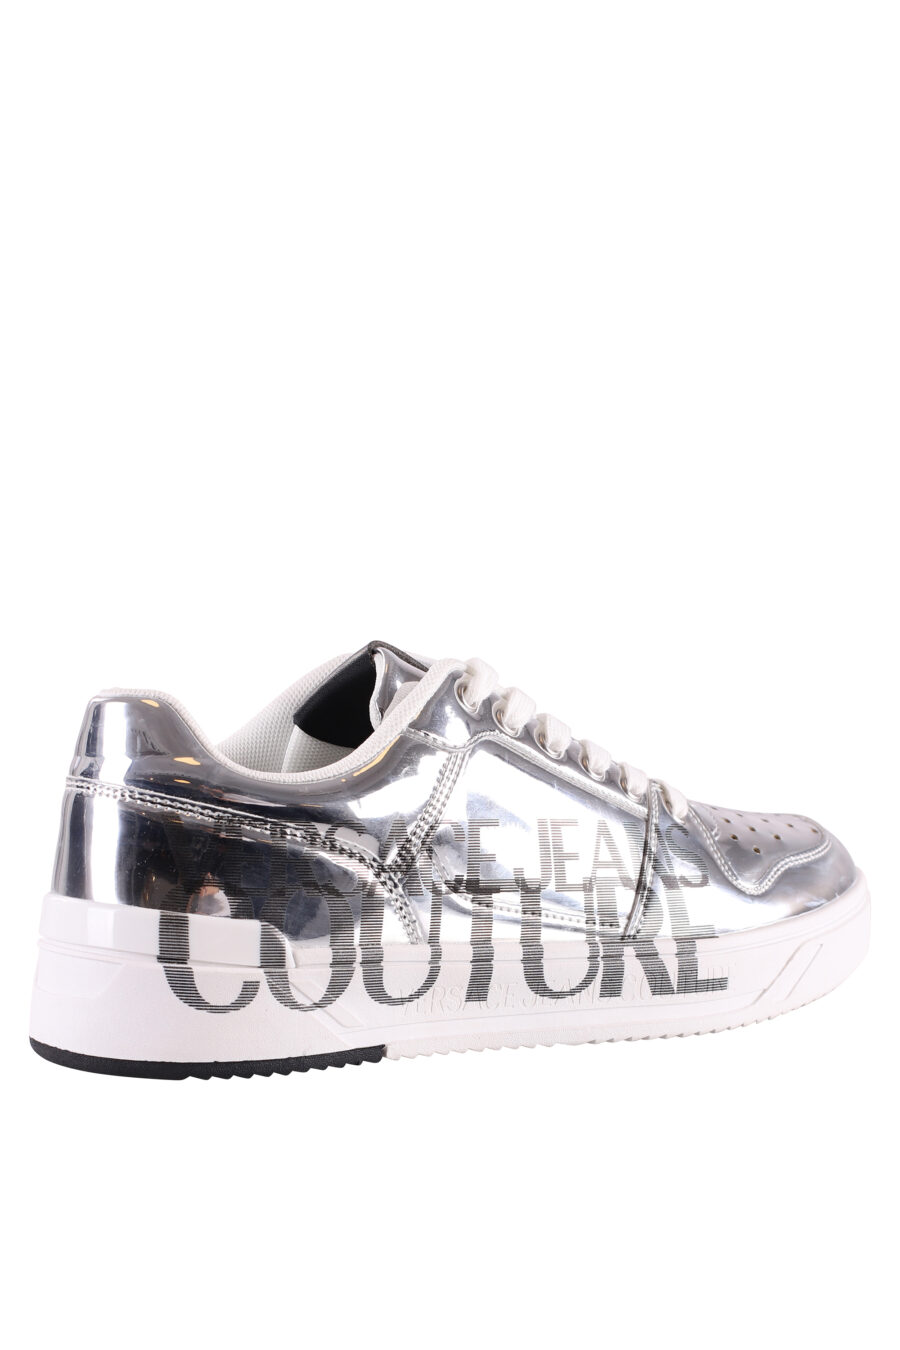 Silberne Schuhe mit Spiegeleffekt und Maxilogo - IMG 8474